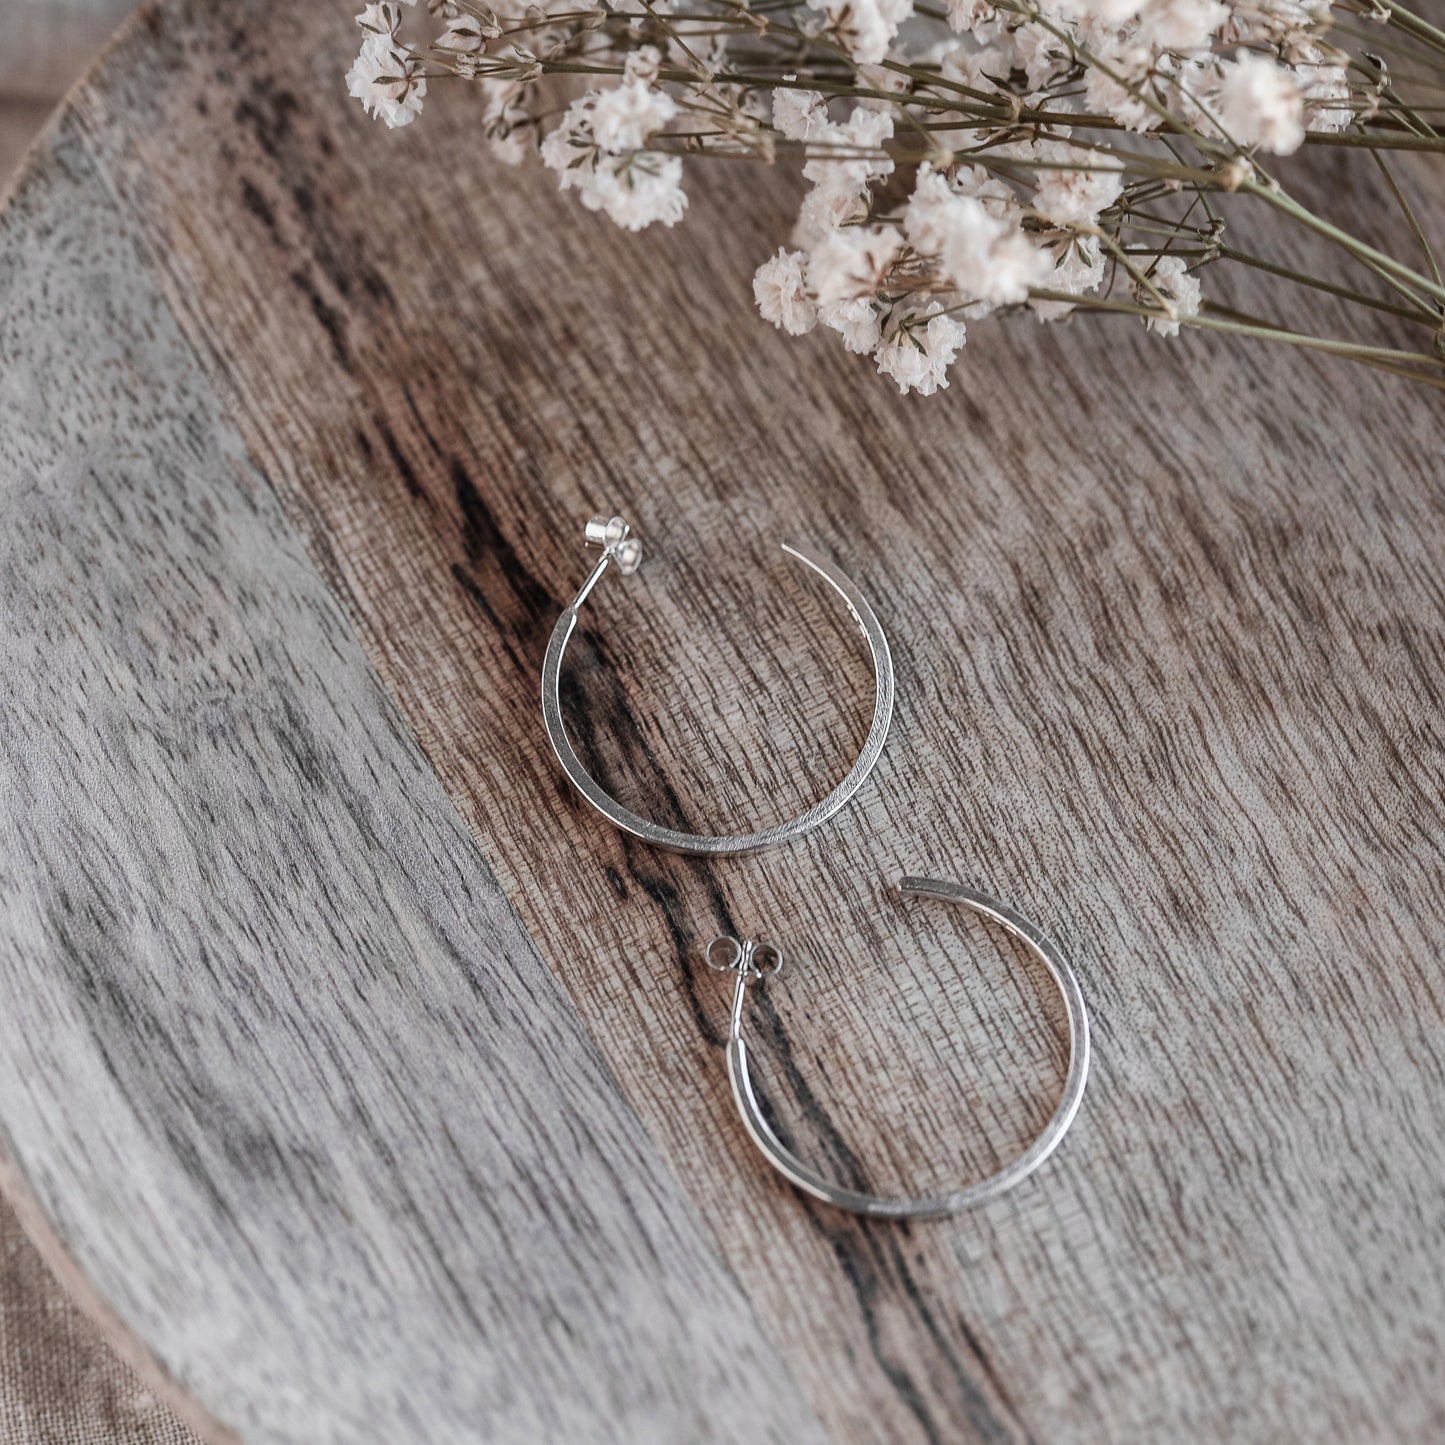 Silver Hoop Earrings Handmade by Anna Calvert Jewellery in the UK